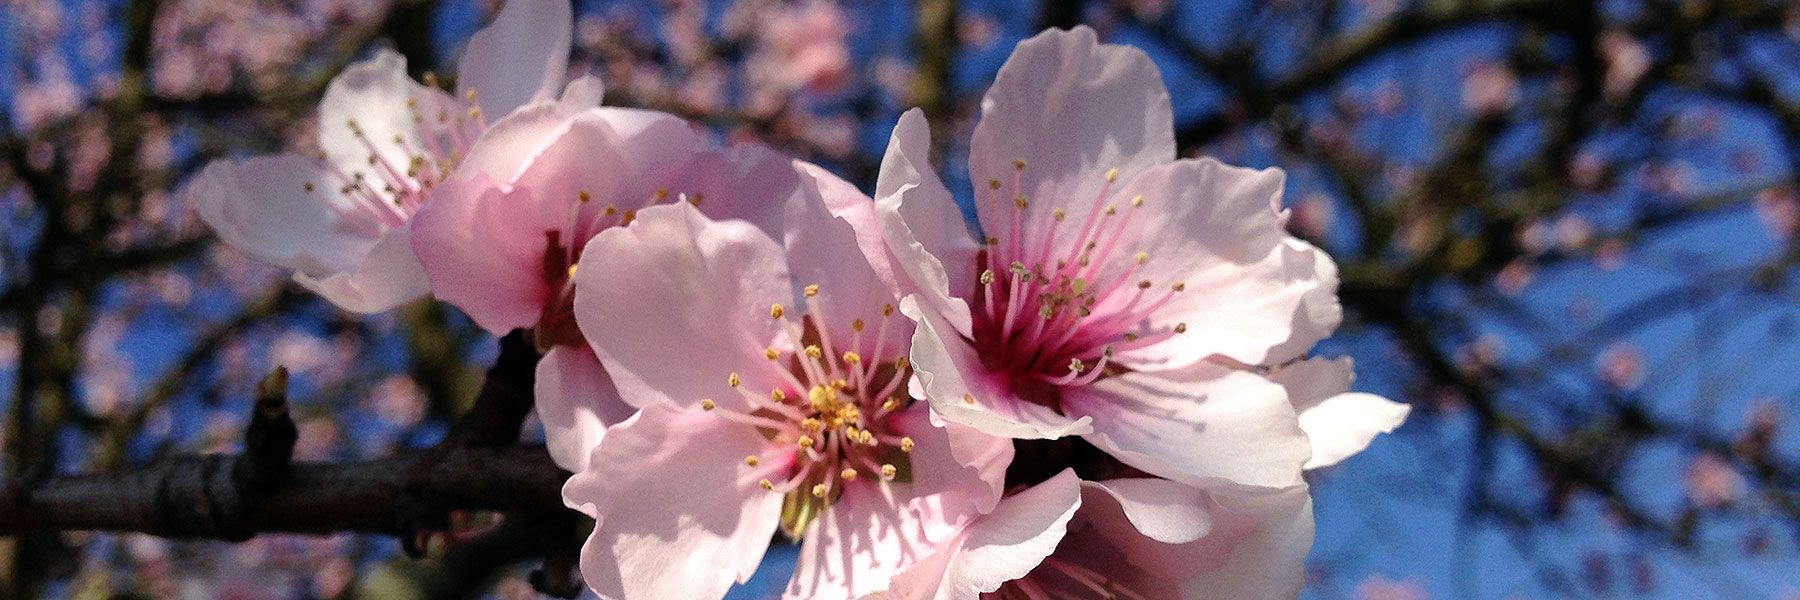 Mandelblüte im März